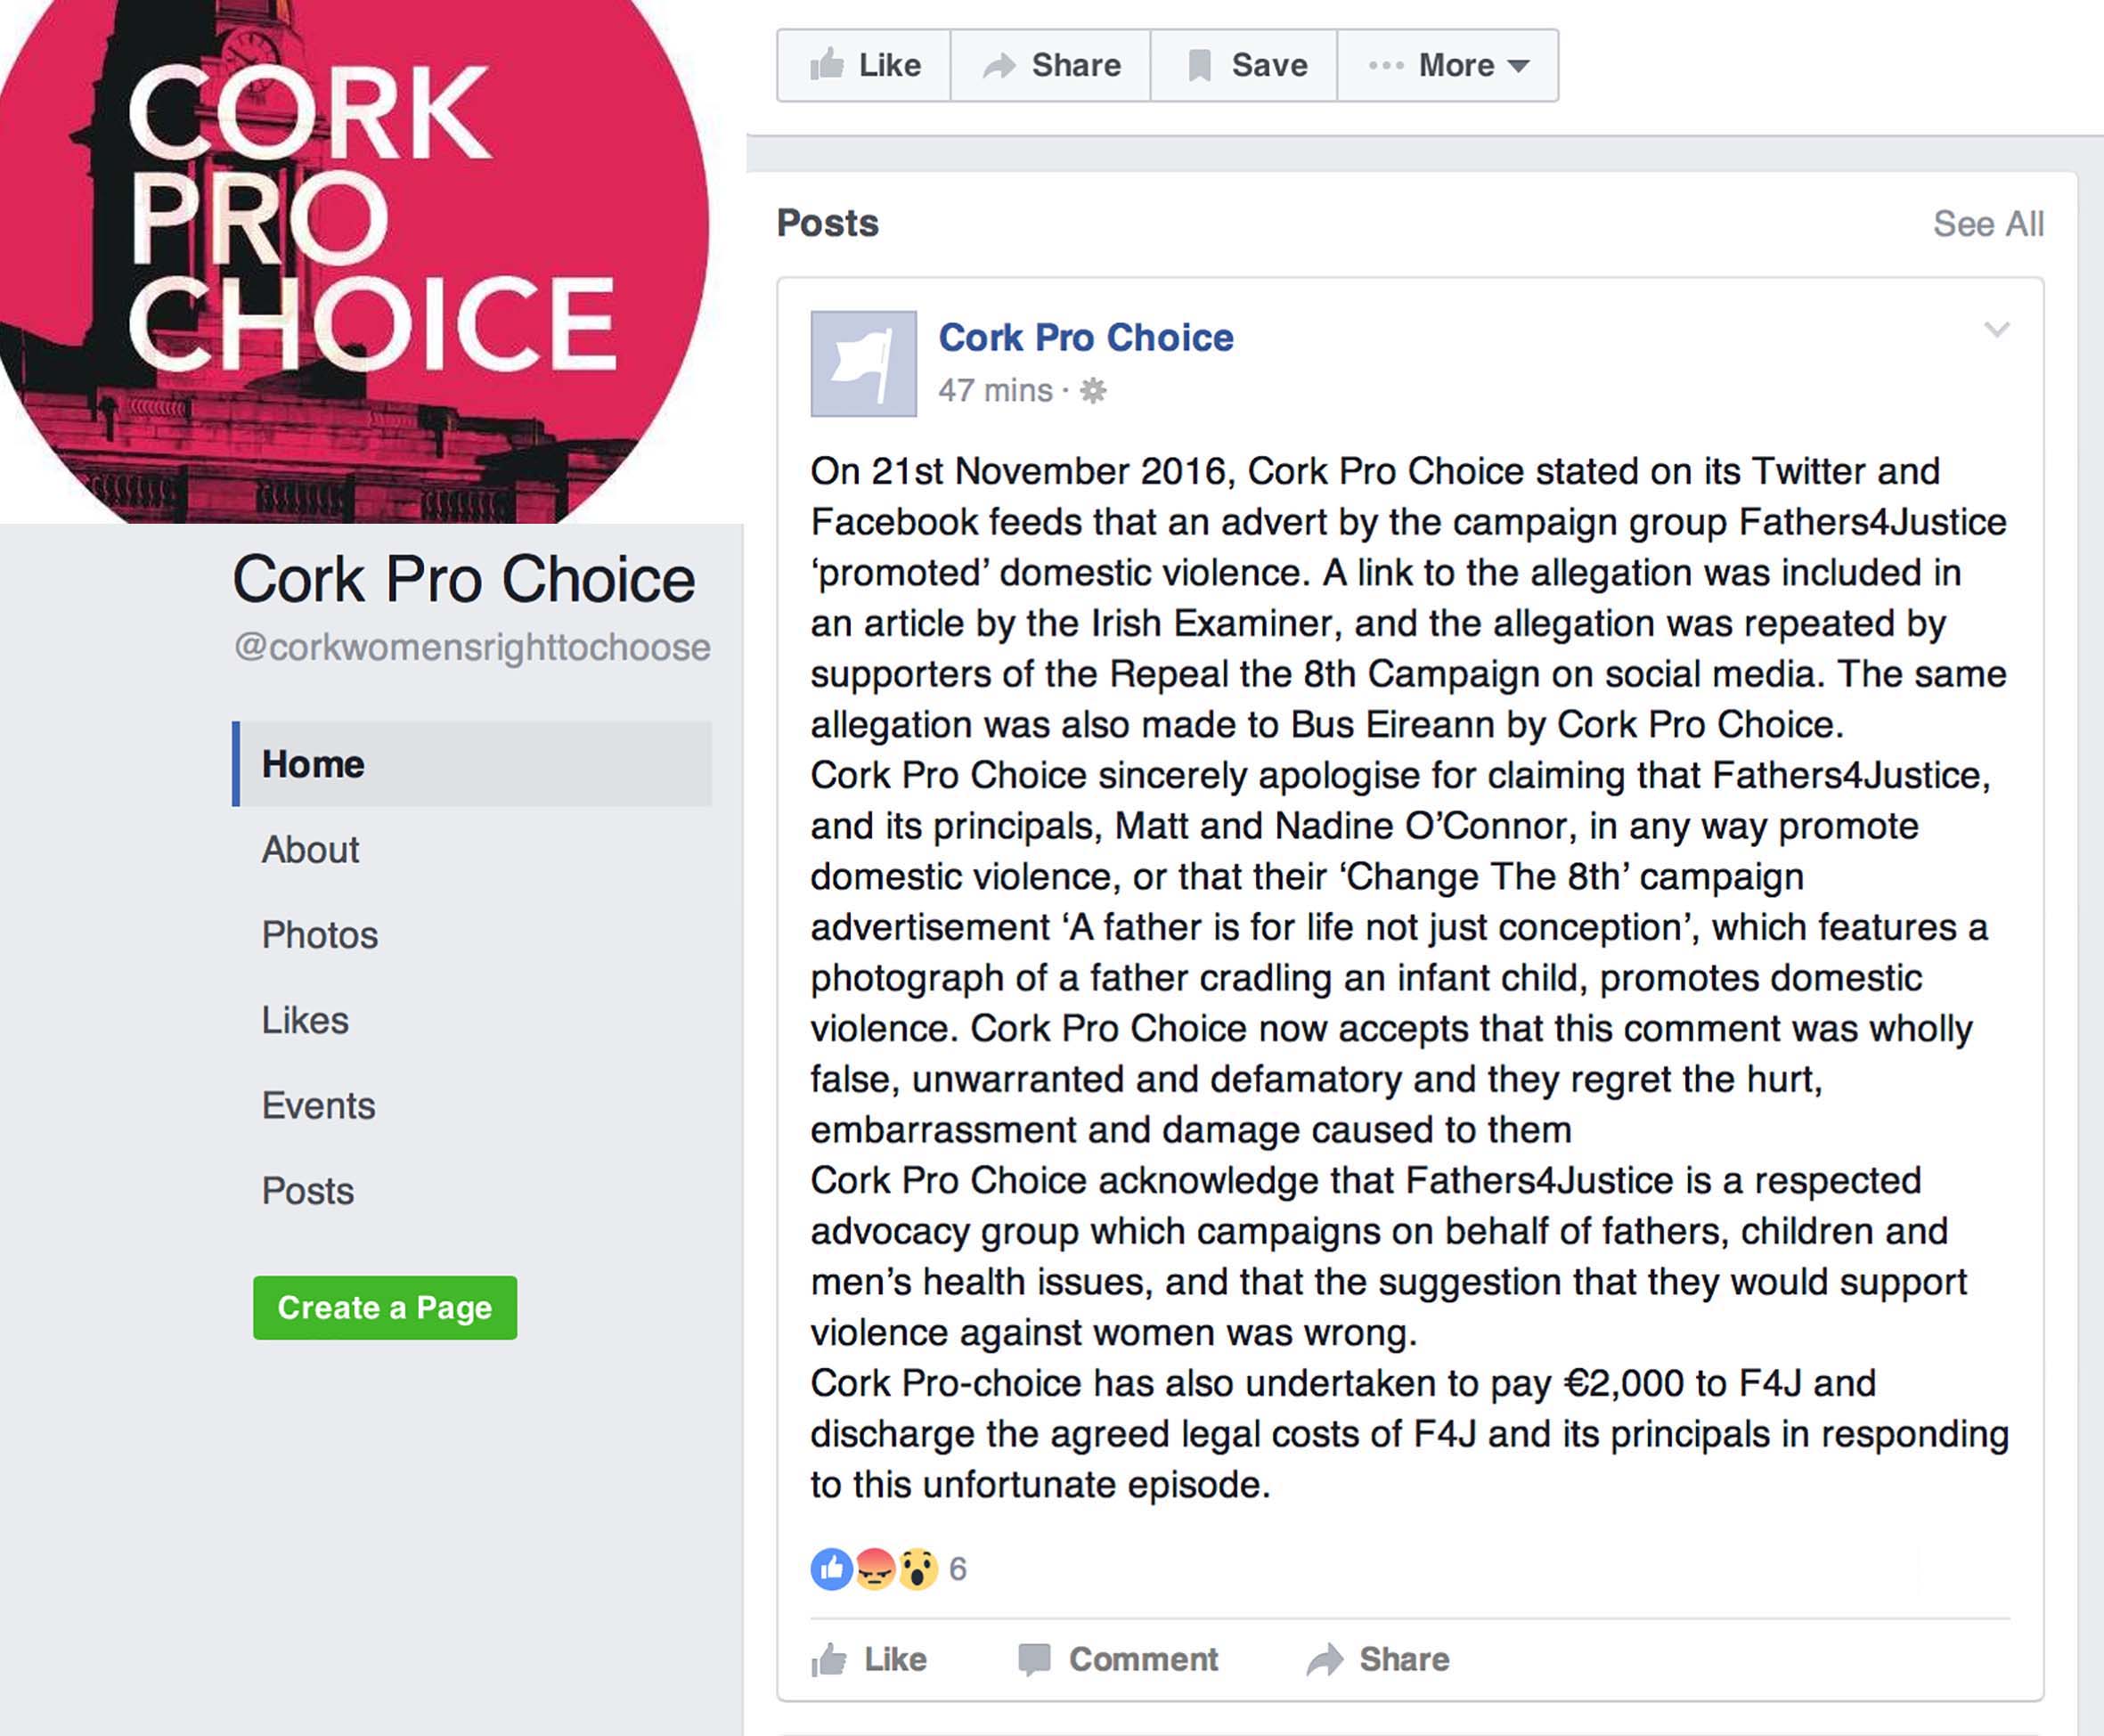 cork-pro-choice-apology-facebook